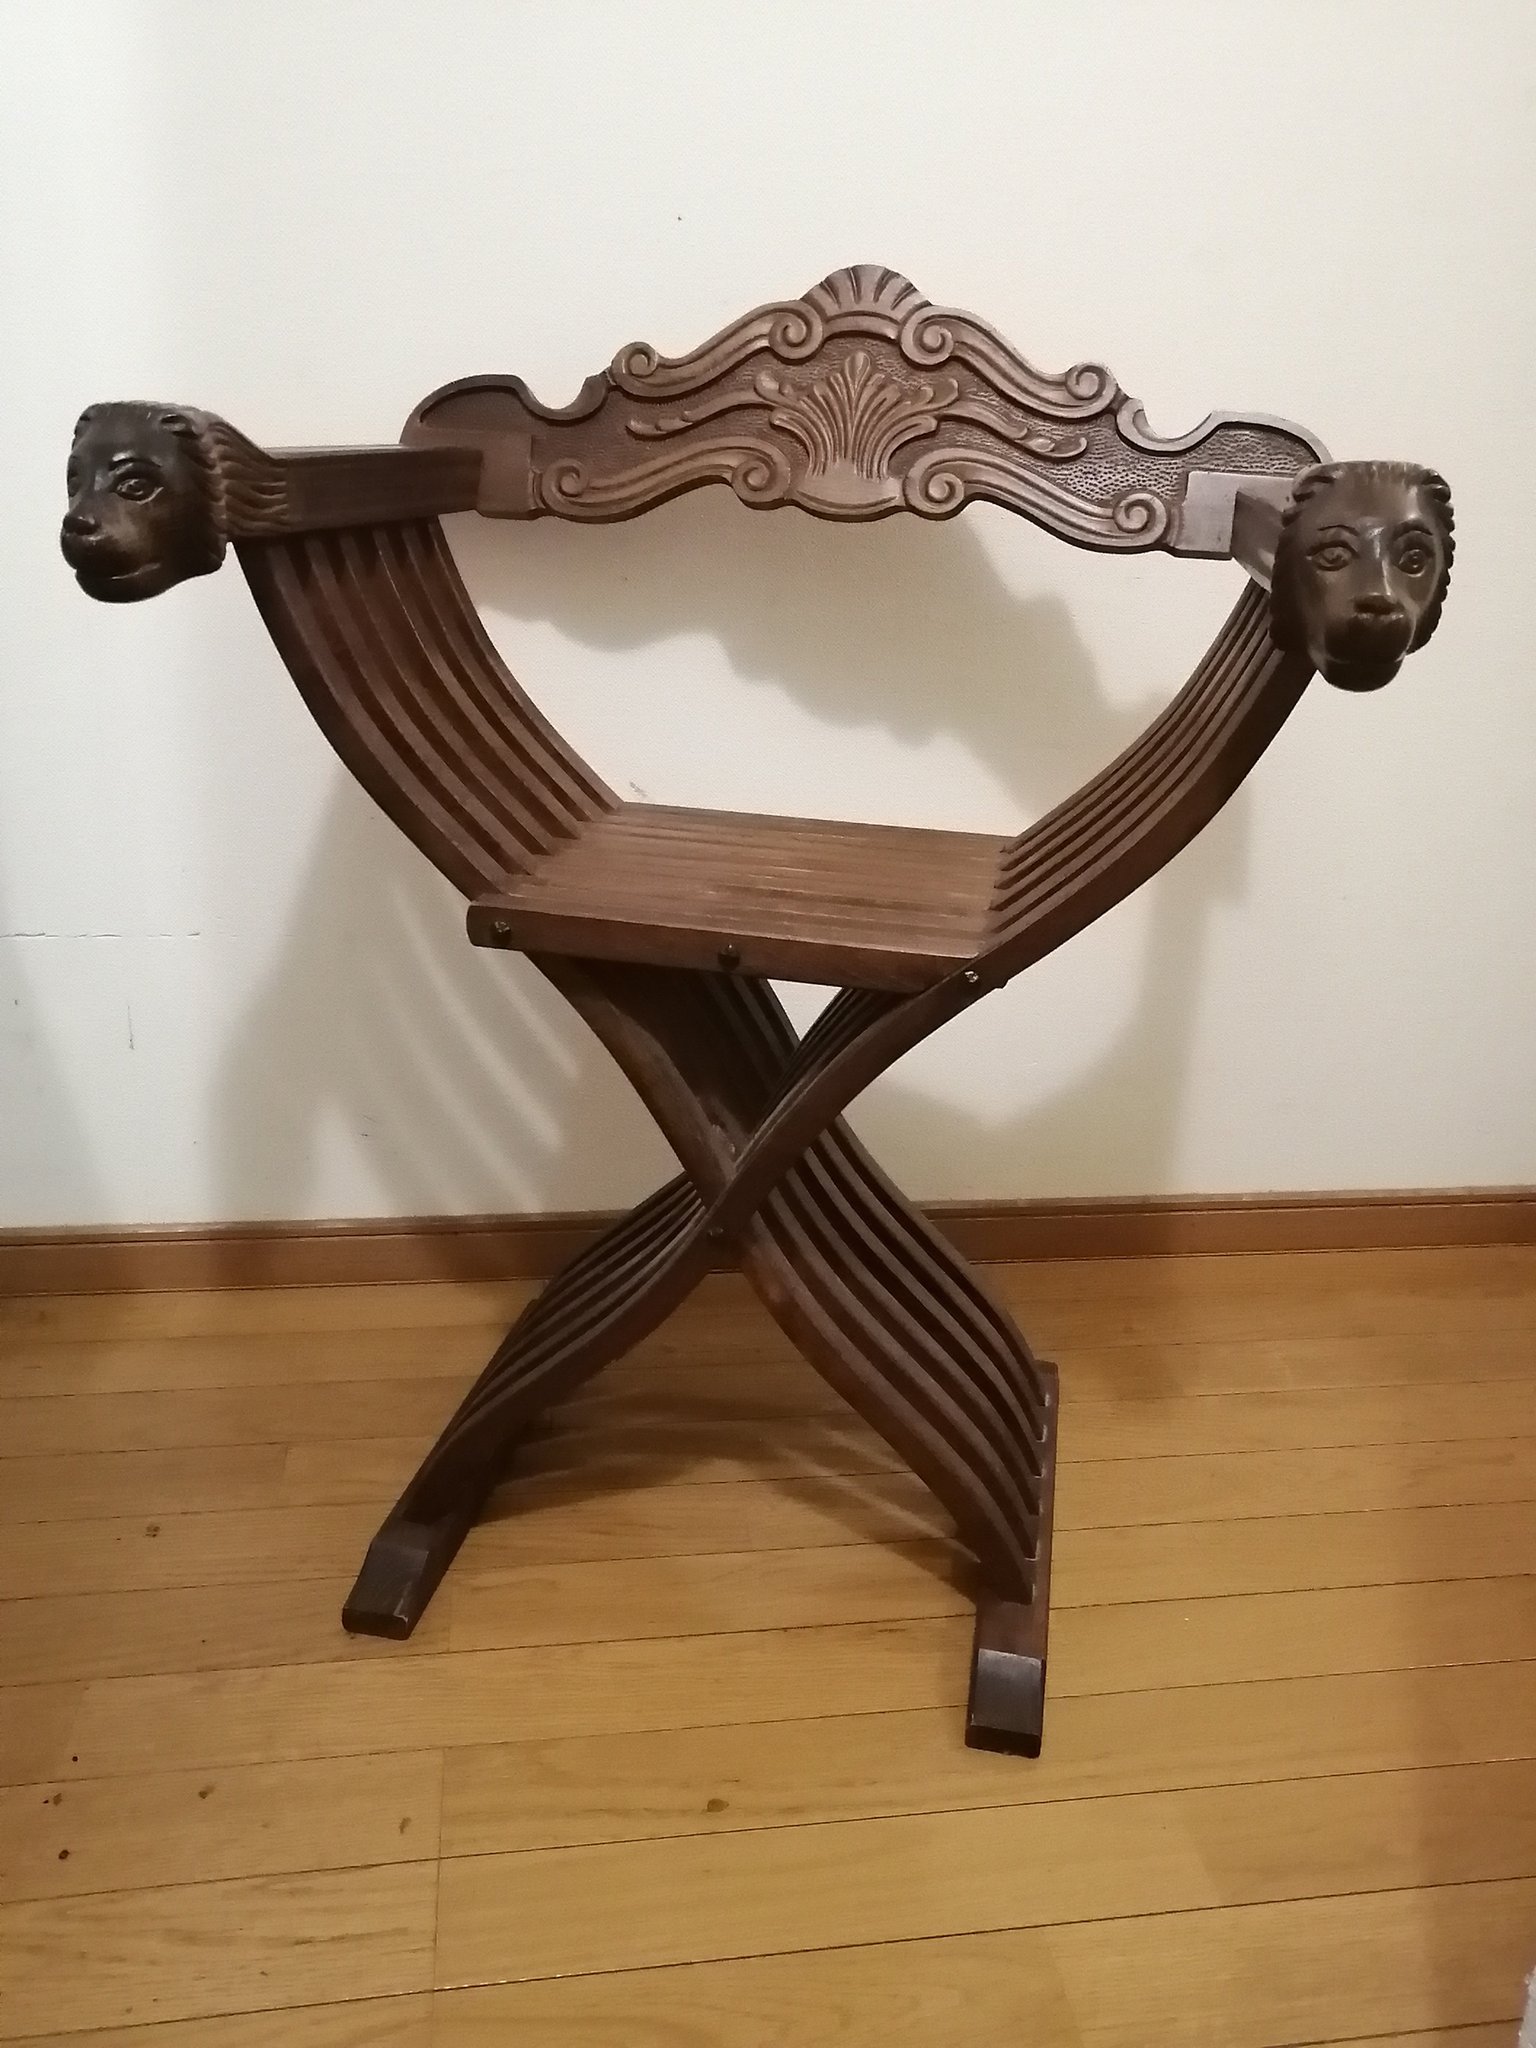 貴族 on Twitter: "これも古道具で5千円で見つけたアトリエ椅子。サヴォナローラチェアってフィレンツェの伝統工芸らしい